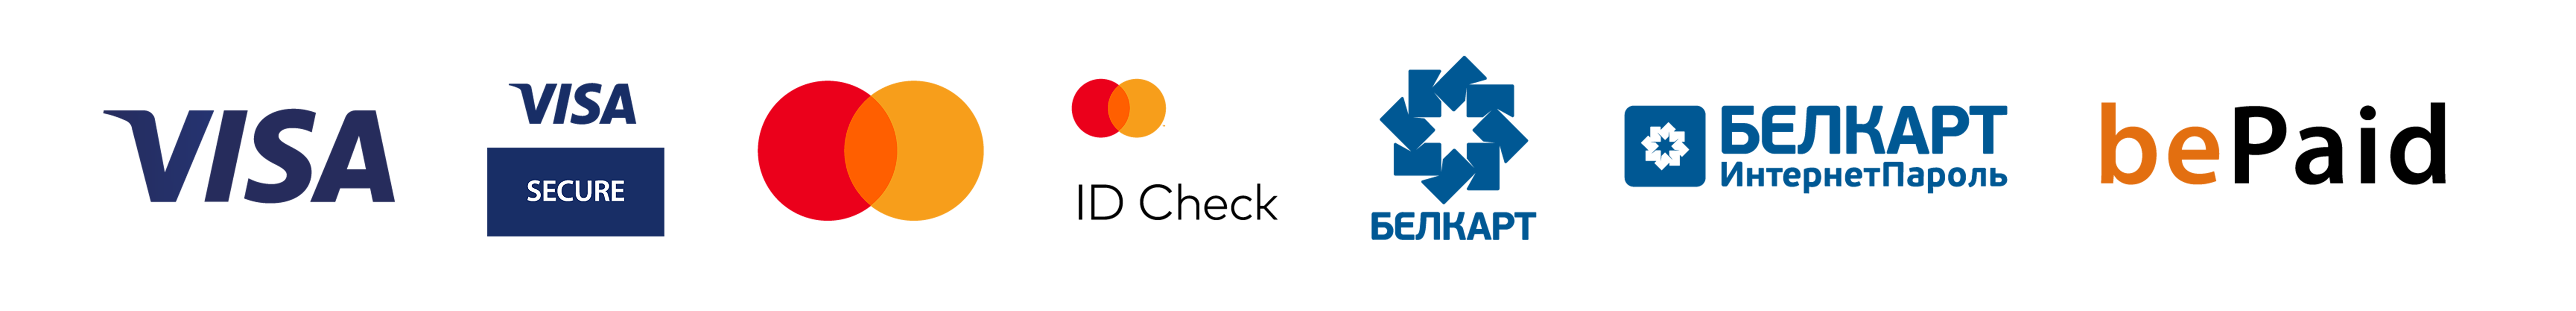 логотипы для футера цветные на прозрачном фоне (519)